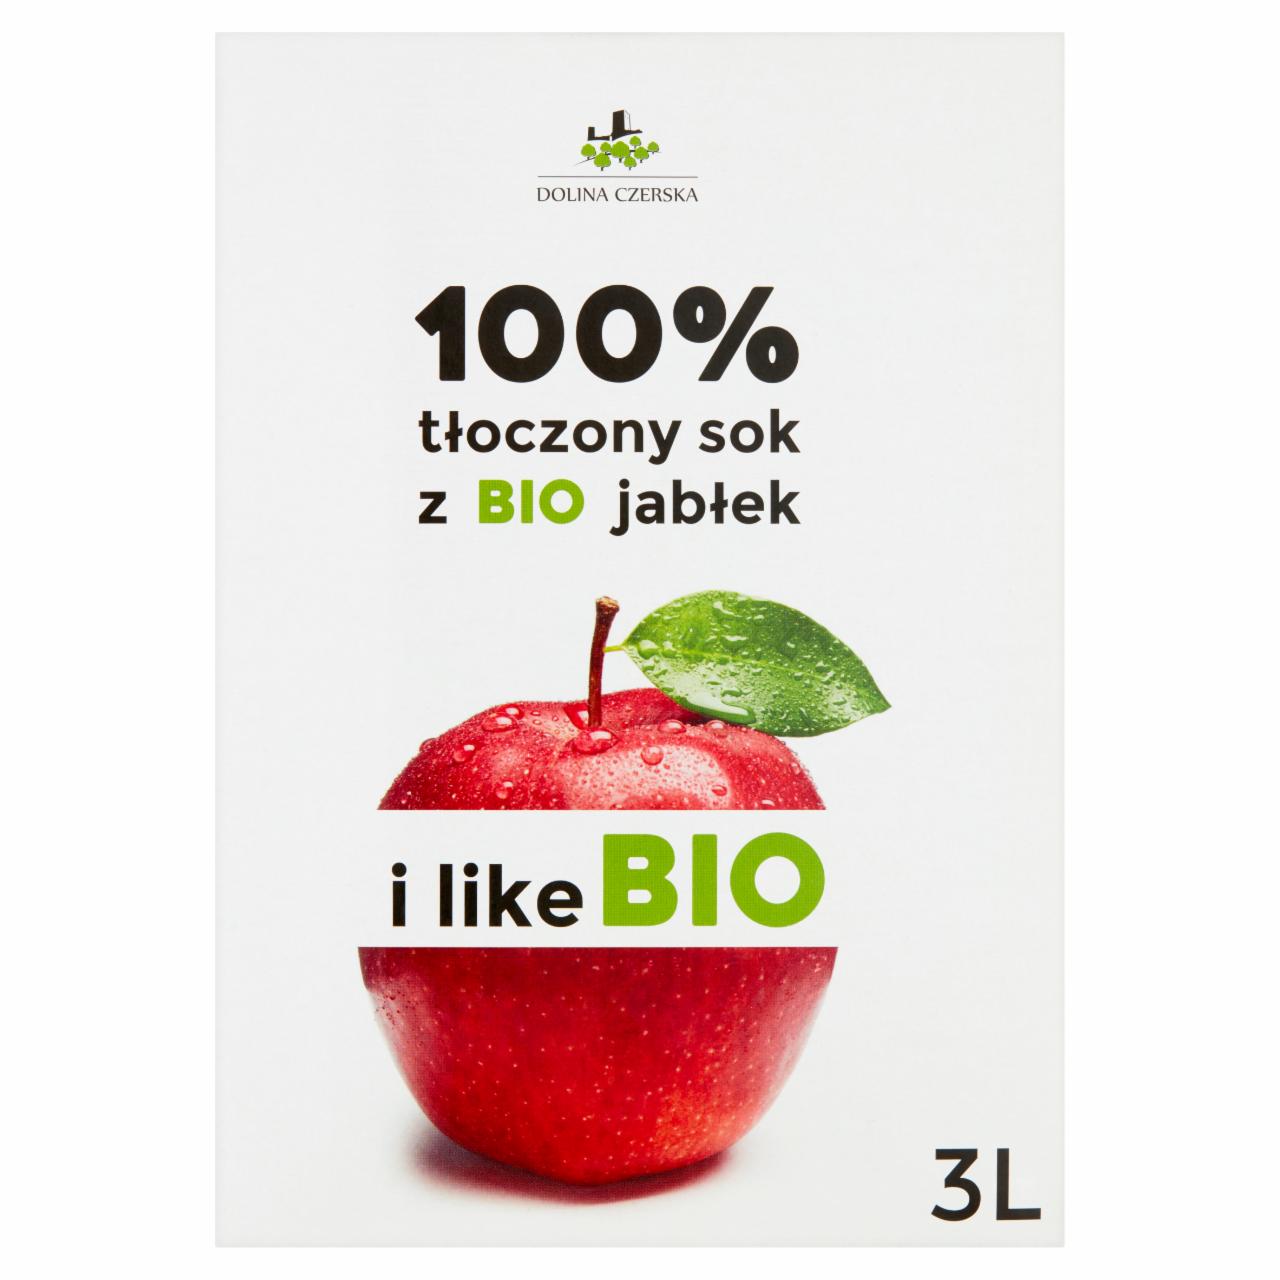 Zdjęcia - Dolina Czerska 100% tłoczony sok z Bio jabłek 3 l